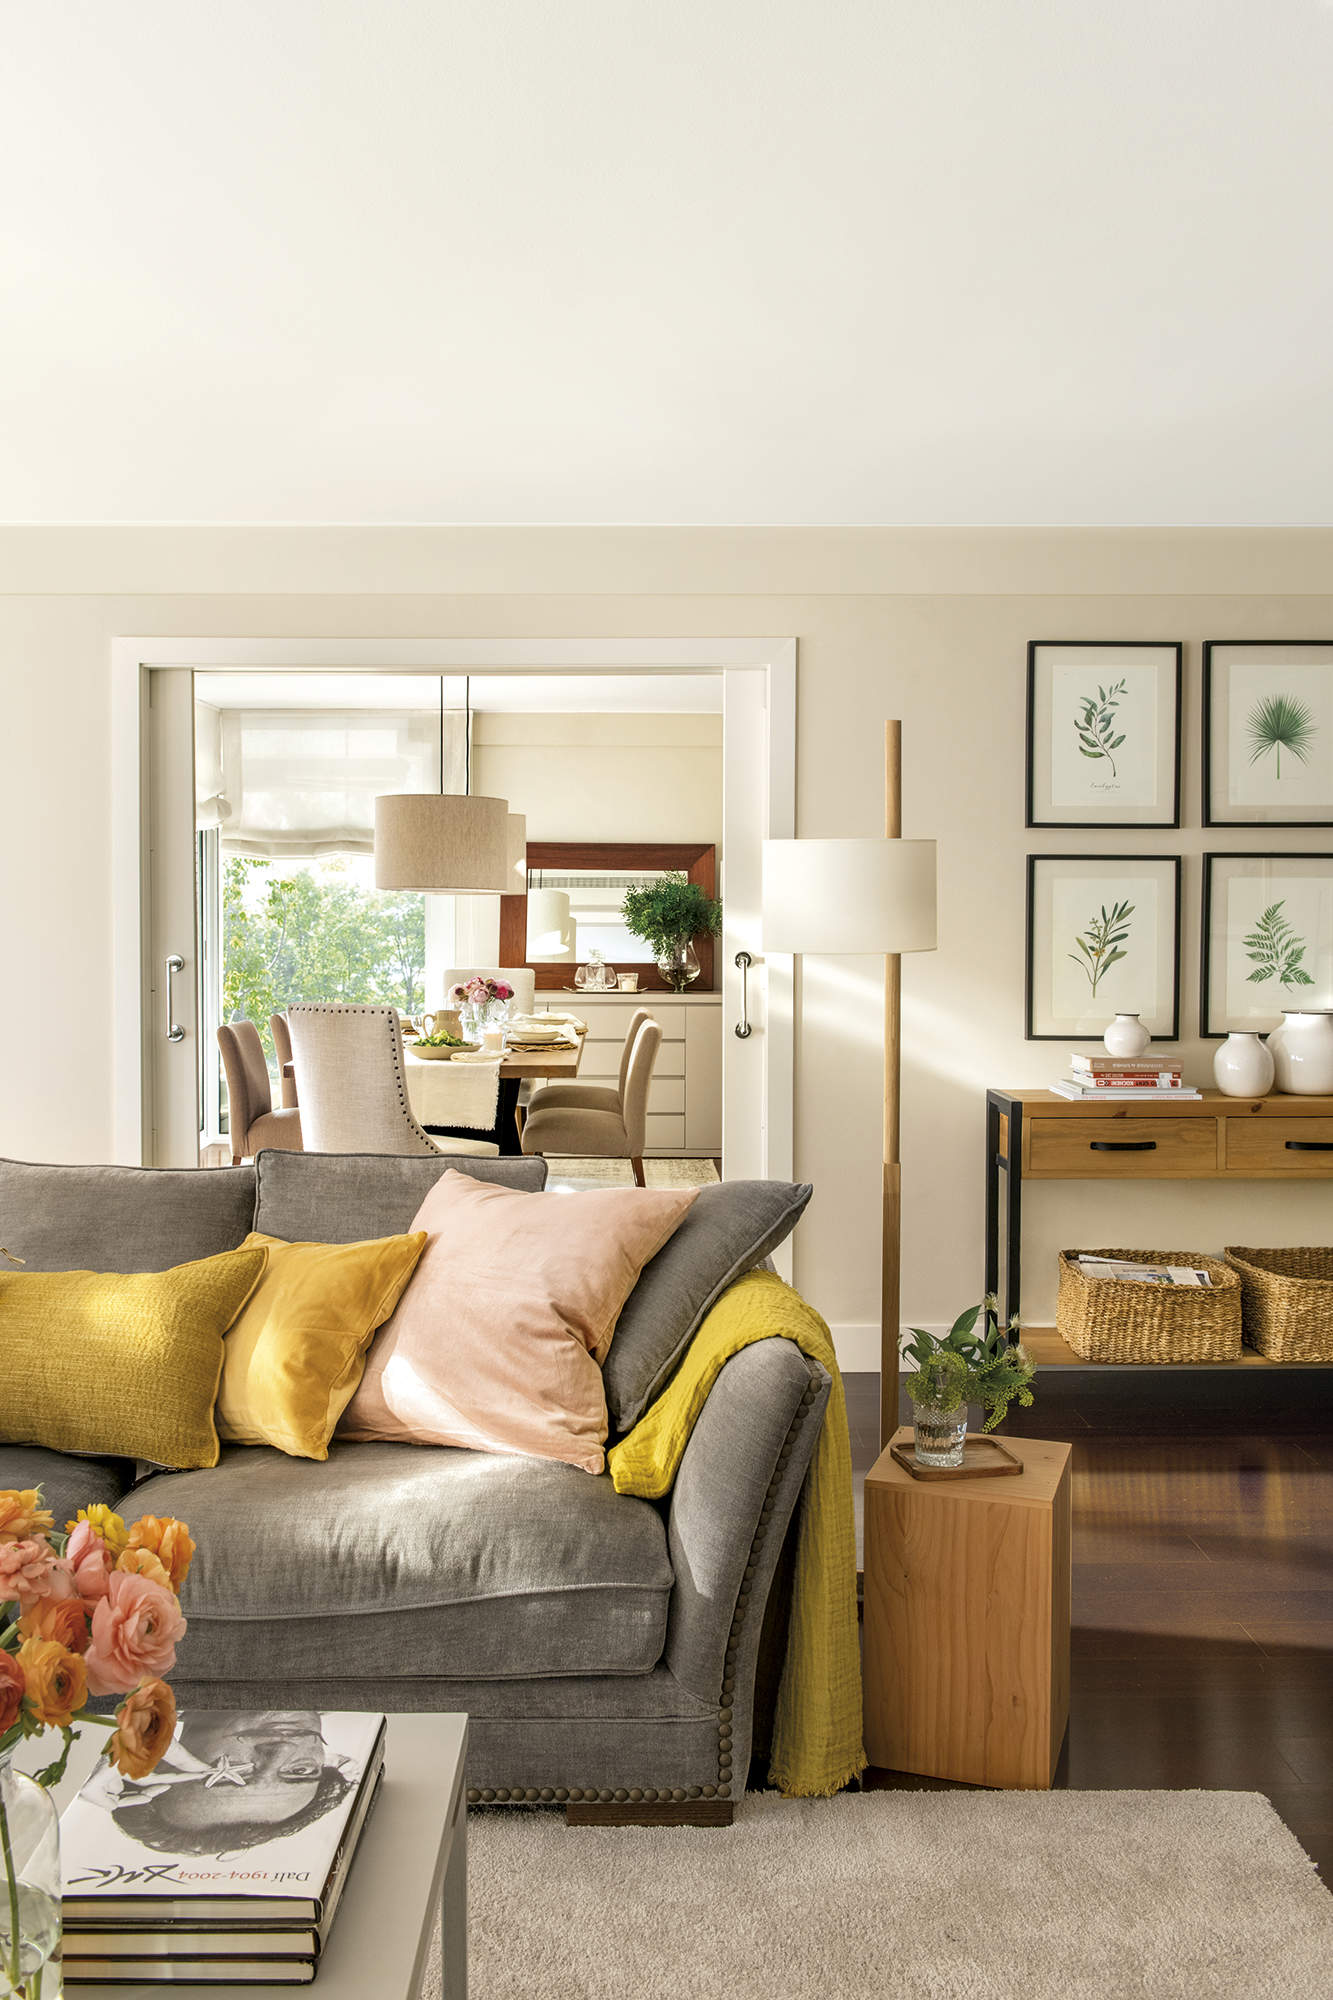 Salón con comedor al fondo, sofá gris con cojines de colores, puerta corredera, lámpara de pié, mueble con cuadros botánicos.